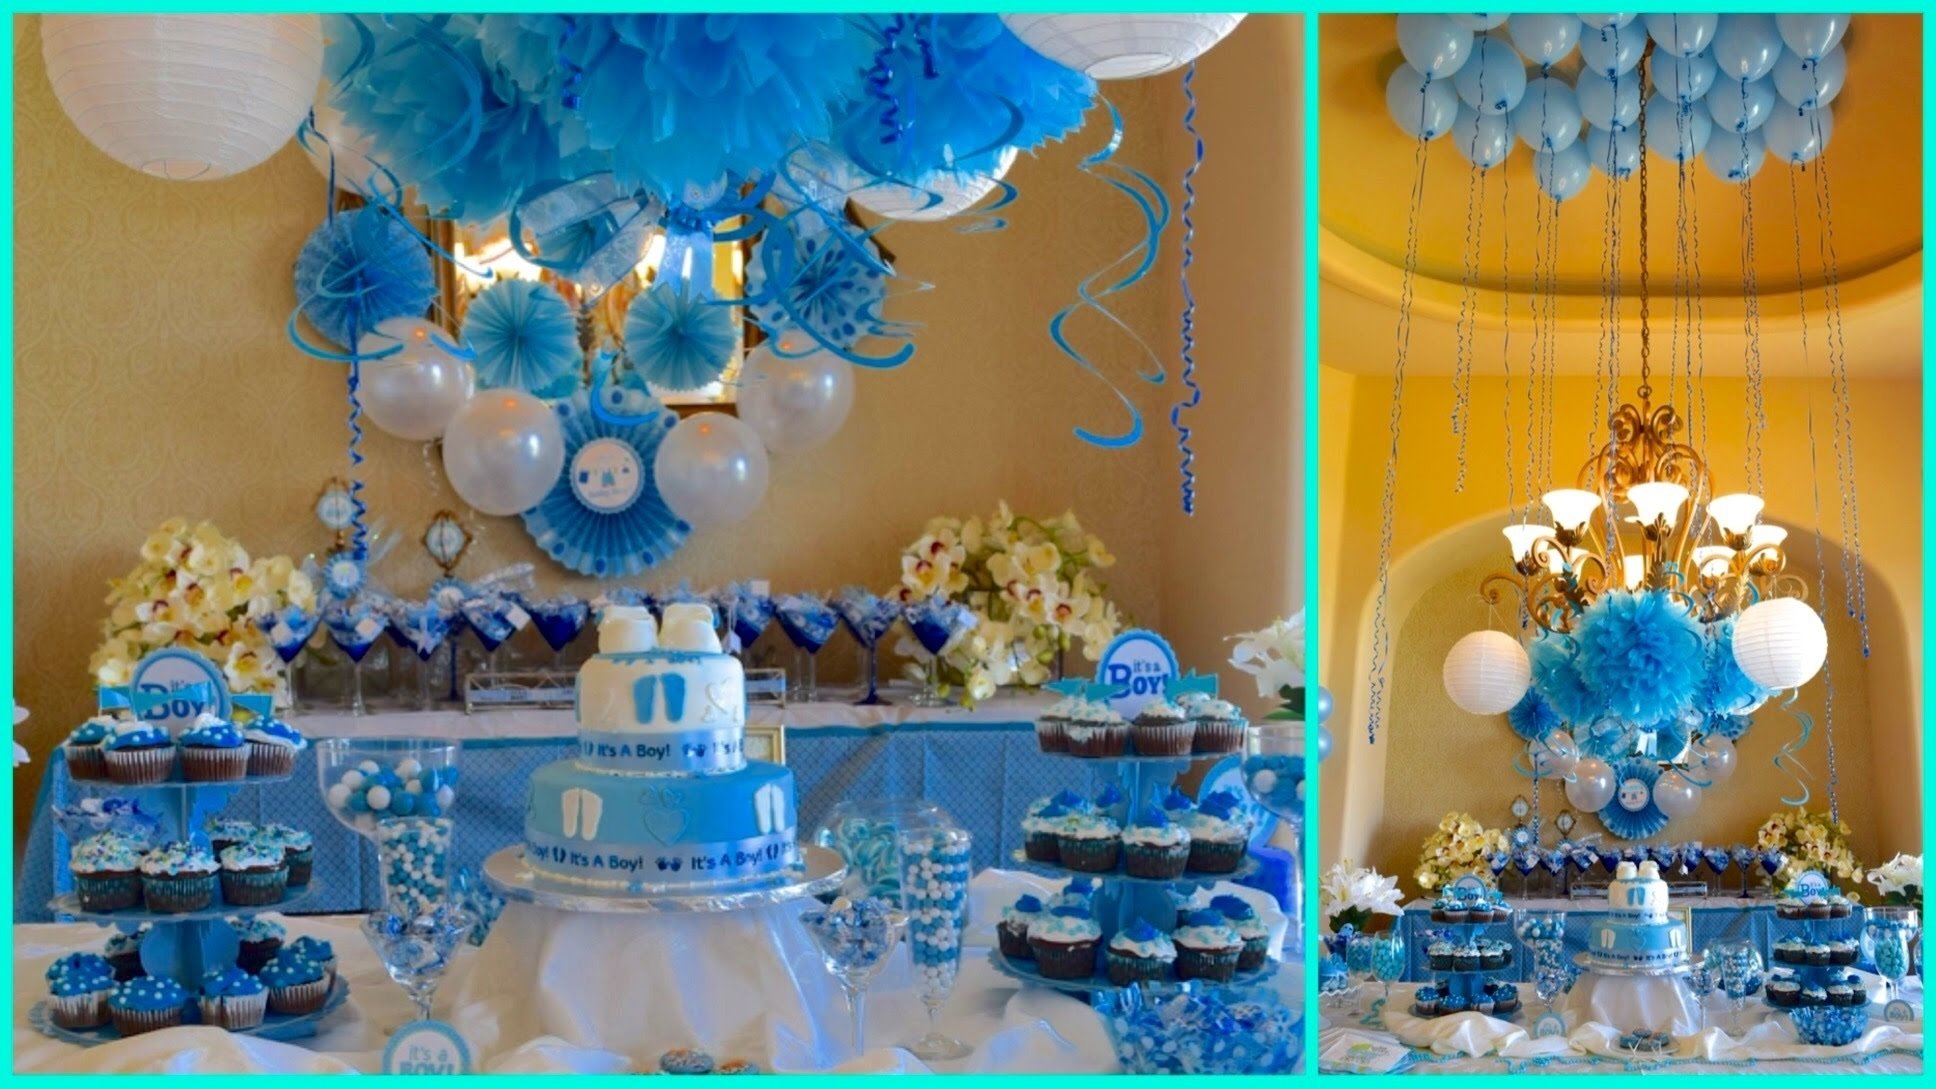 10 Unique Baby Shower Decoration Ideas For Boy baby shower ideas for boy blue theme youtube 9 2022